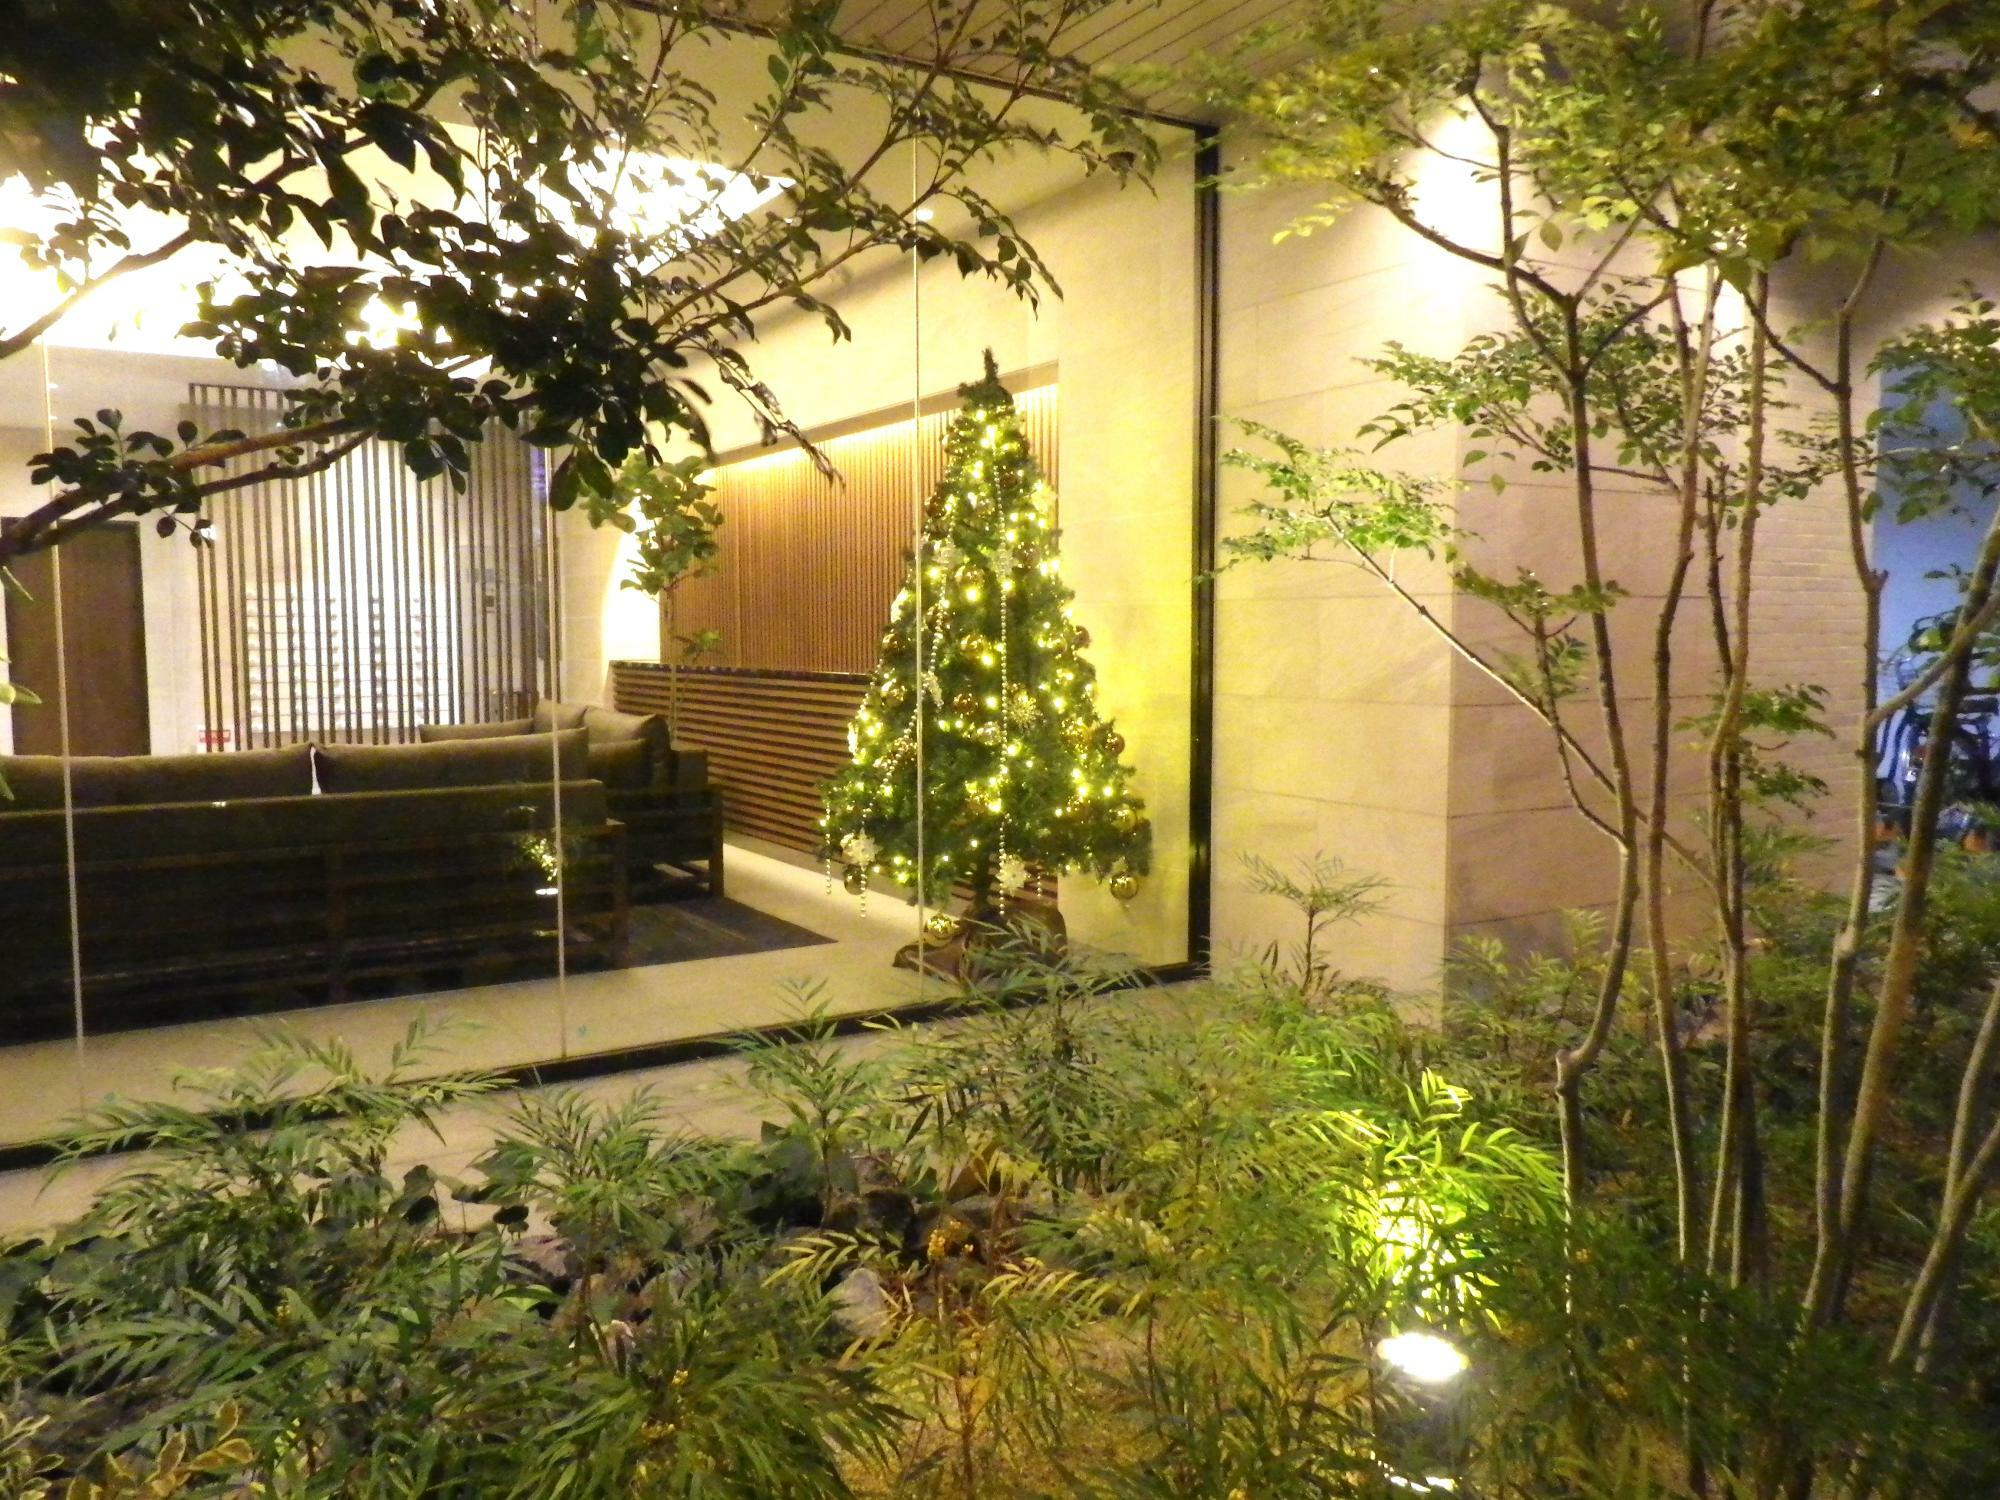 途中のビルの一階にも、素敵なクリスマスツリーが飾られ、あたりはもうクリスマス気分。